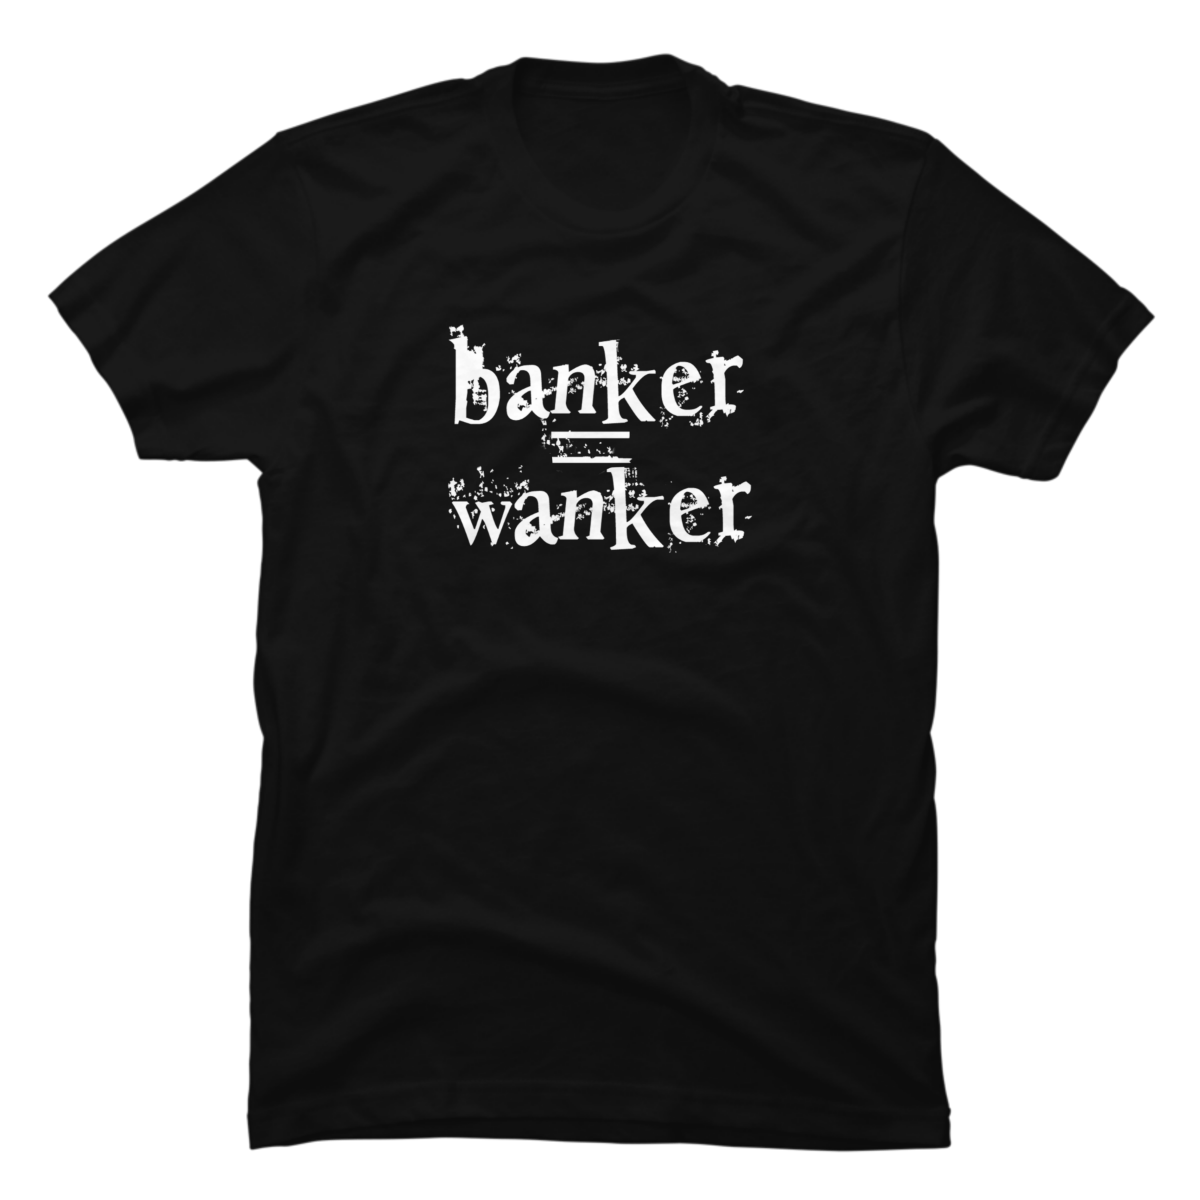 wanker t shirt